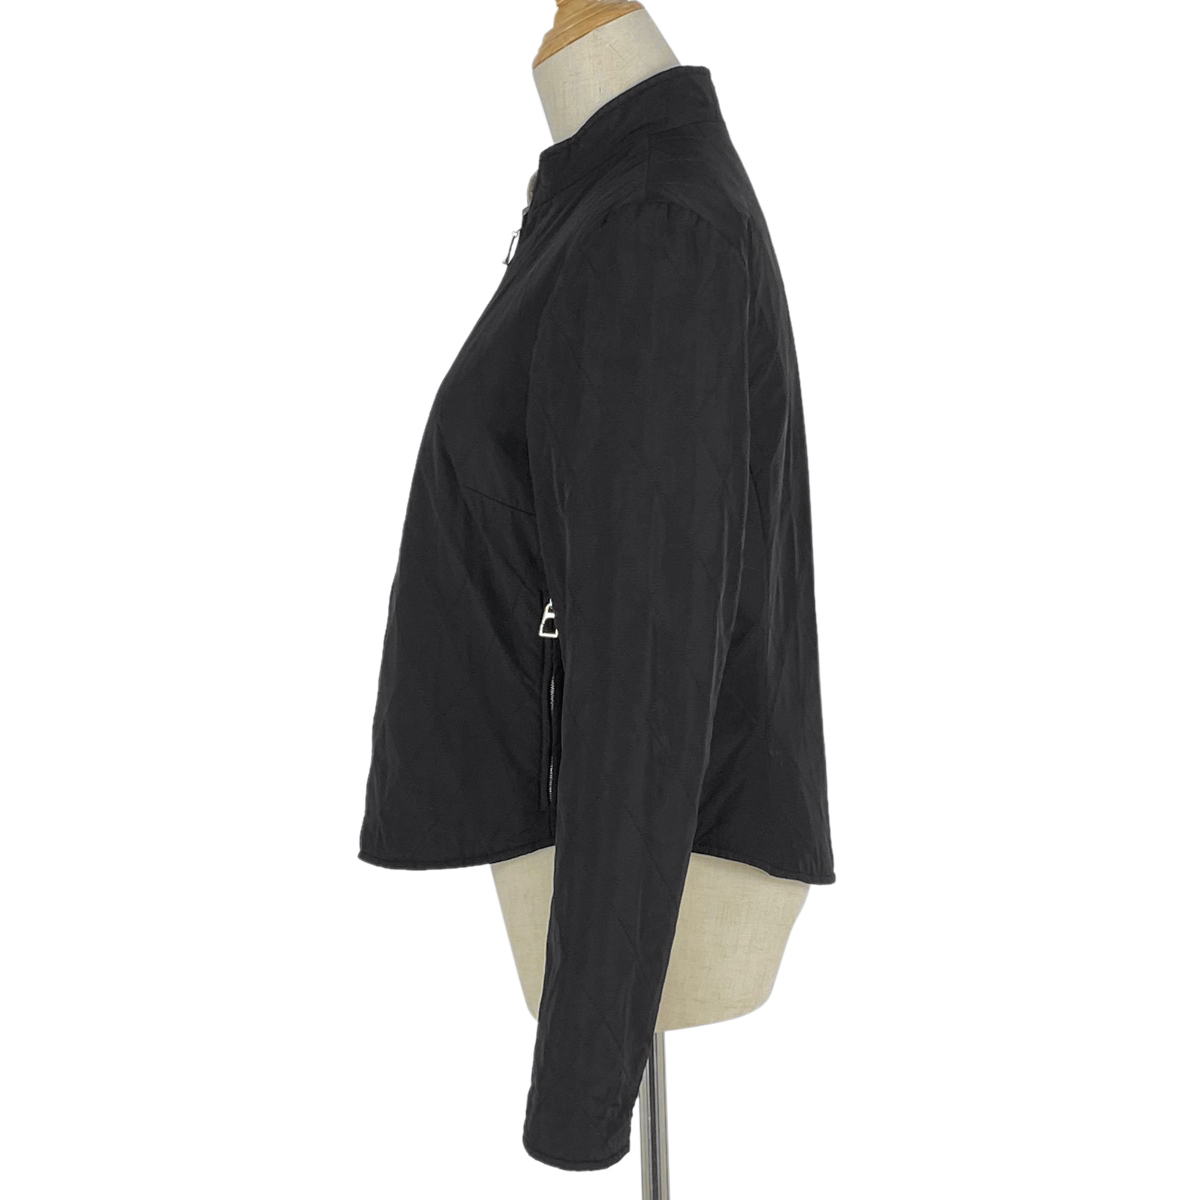  Hermes HERMES двусторонний жакет внешний стеганная куртка нейлон полиэстер черный бежевый женский б/у 